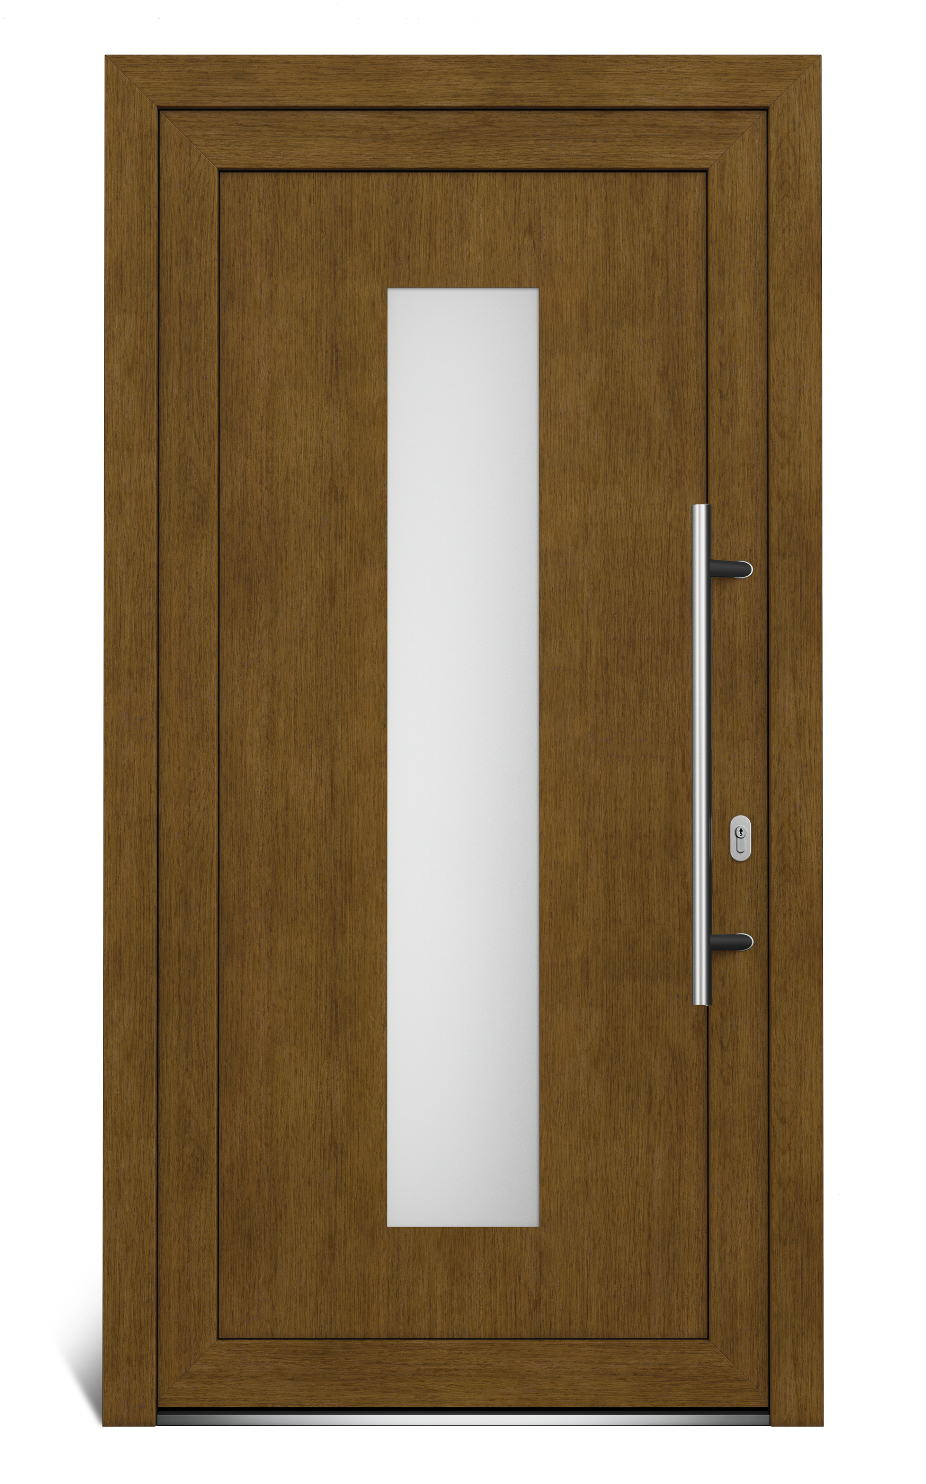 Hlavní vchodové dveře EkoLine pravé - SKLADOVÁ-OKNA.cz - 1044 x 2020